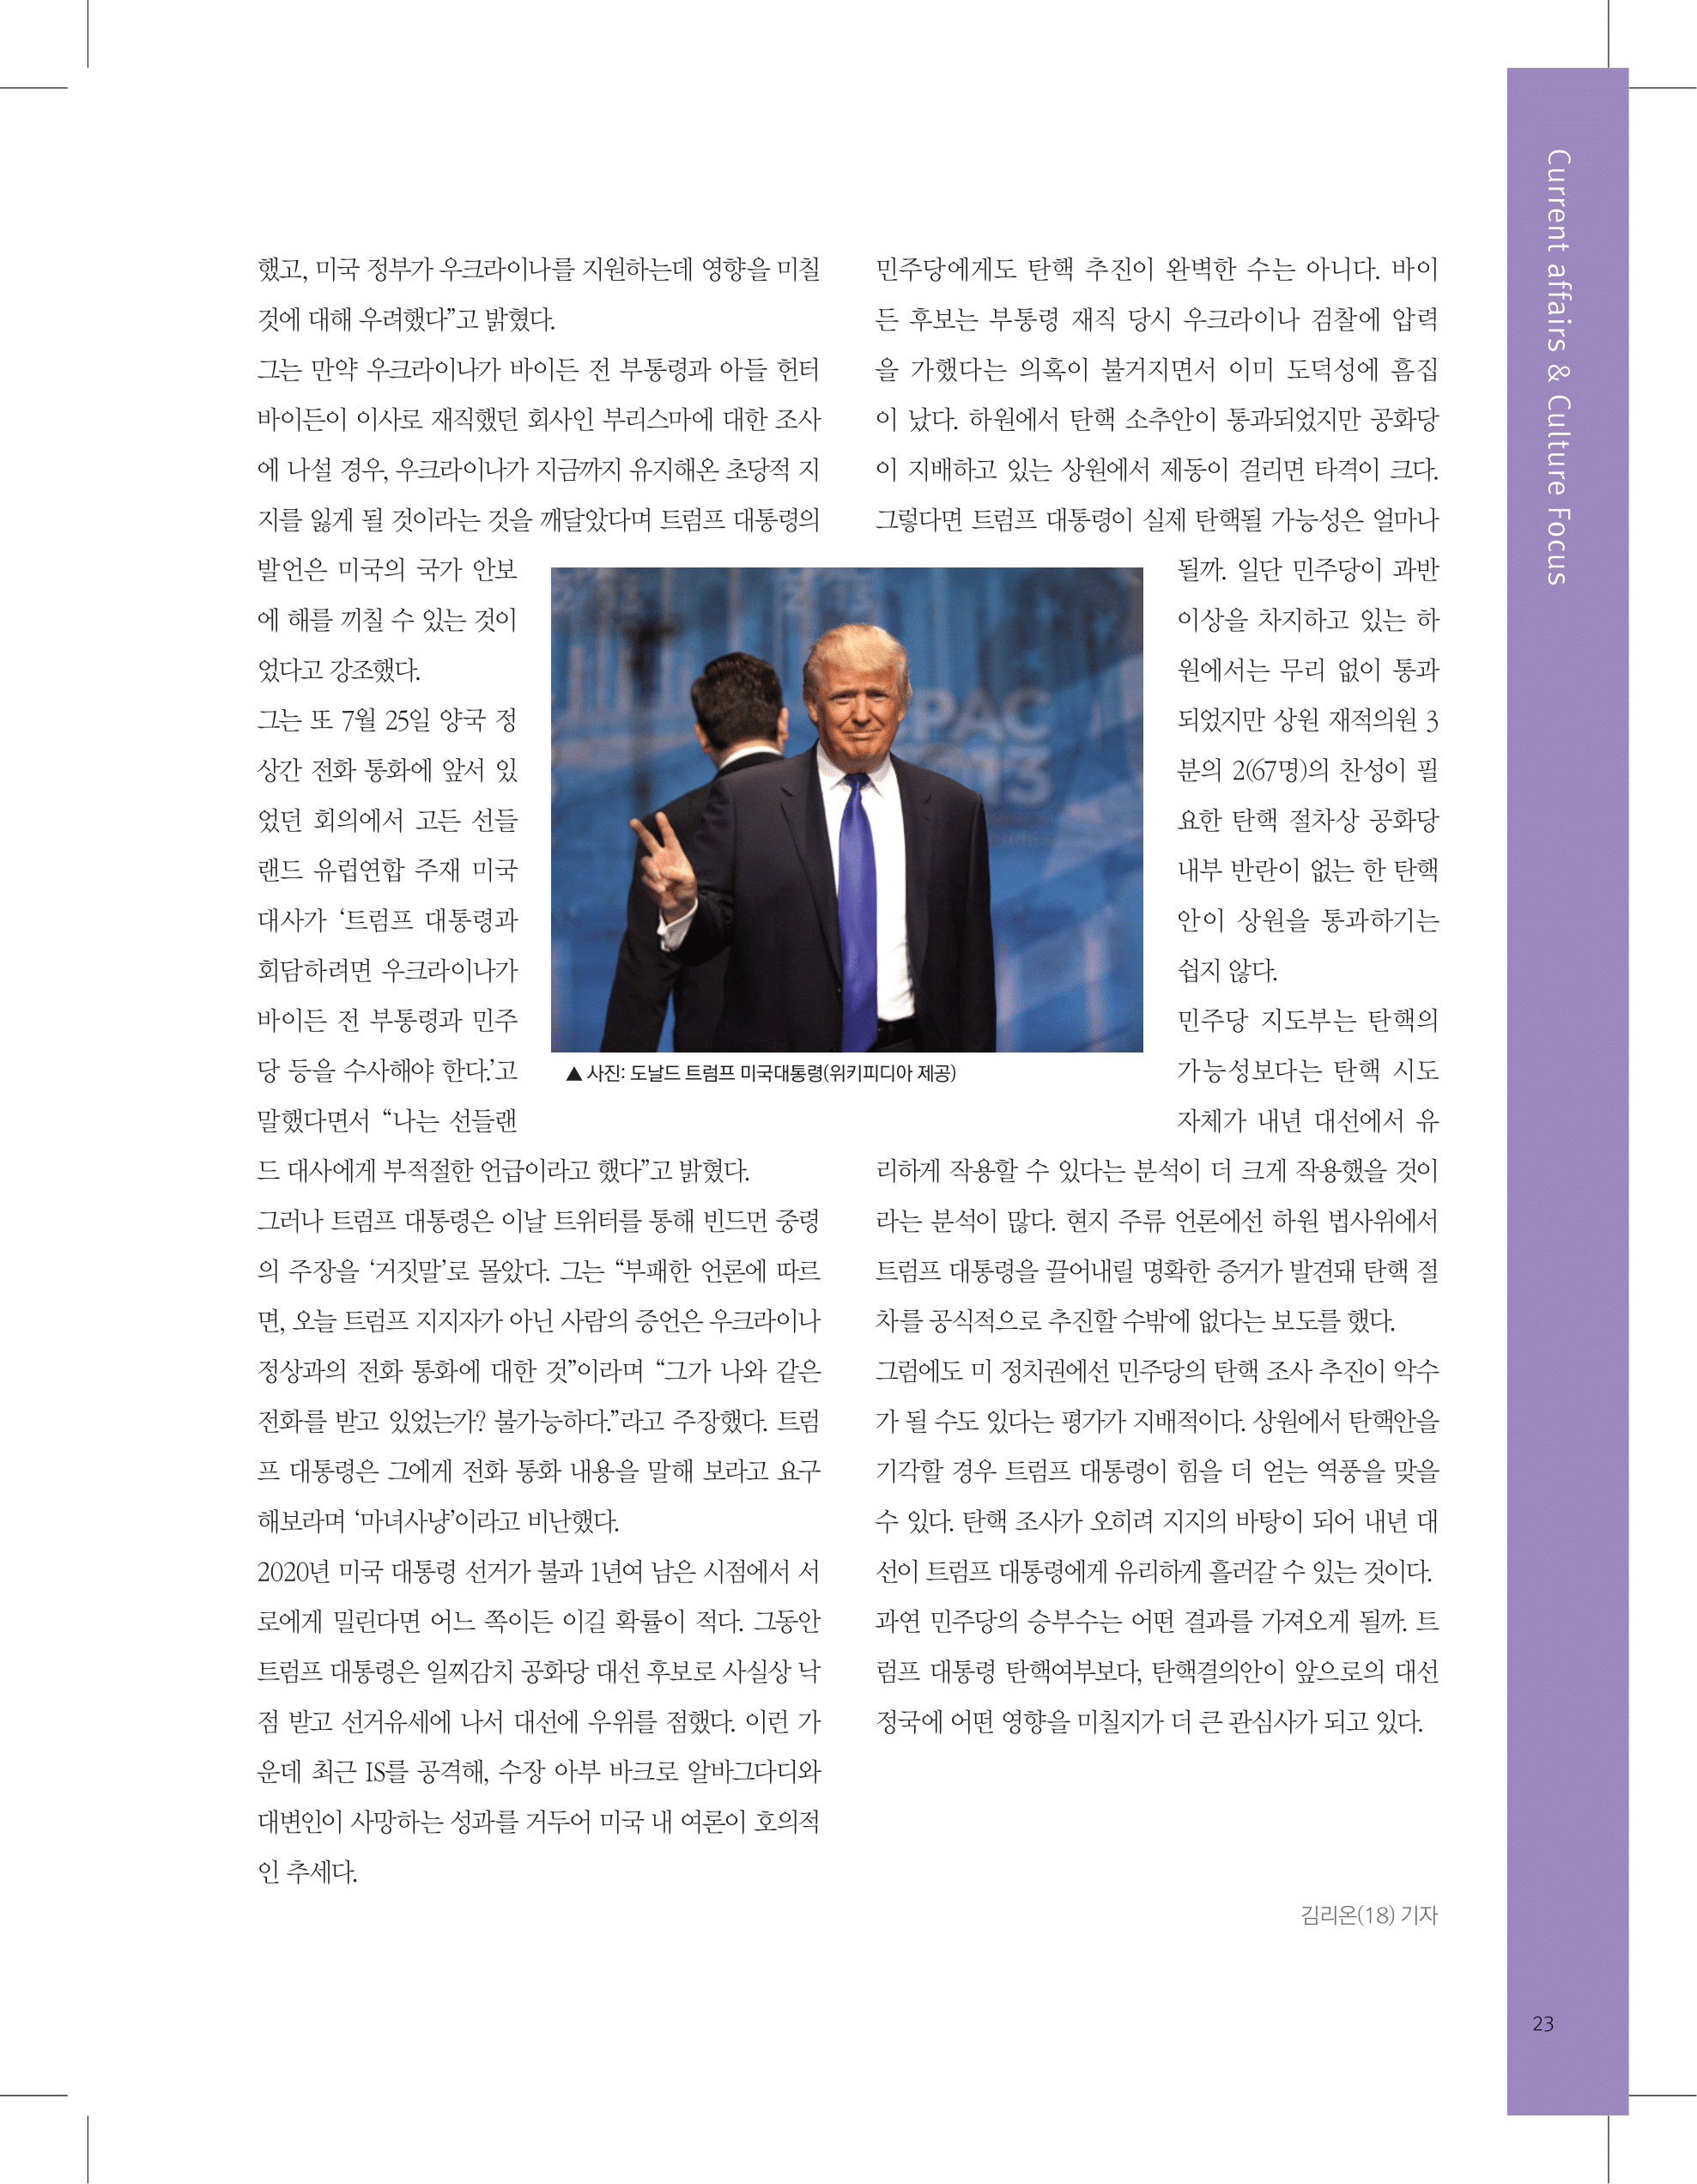 뜻새김 신문 74호 23